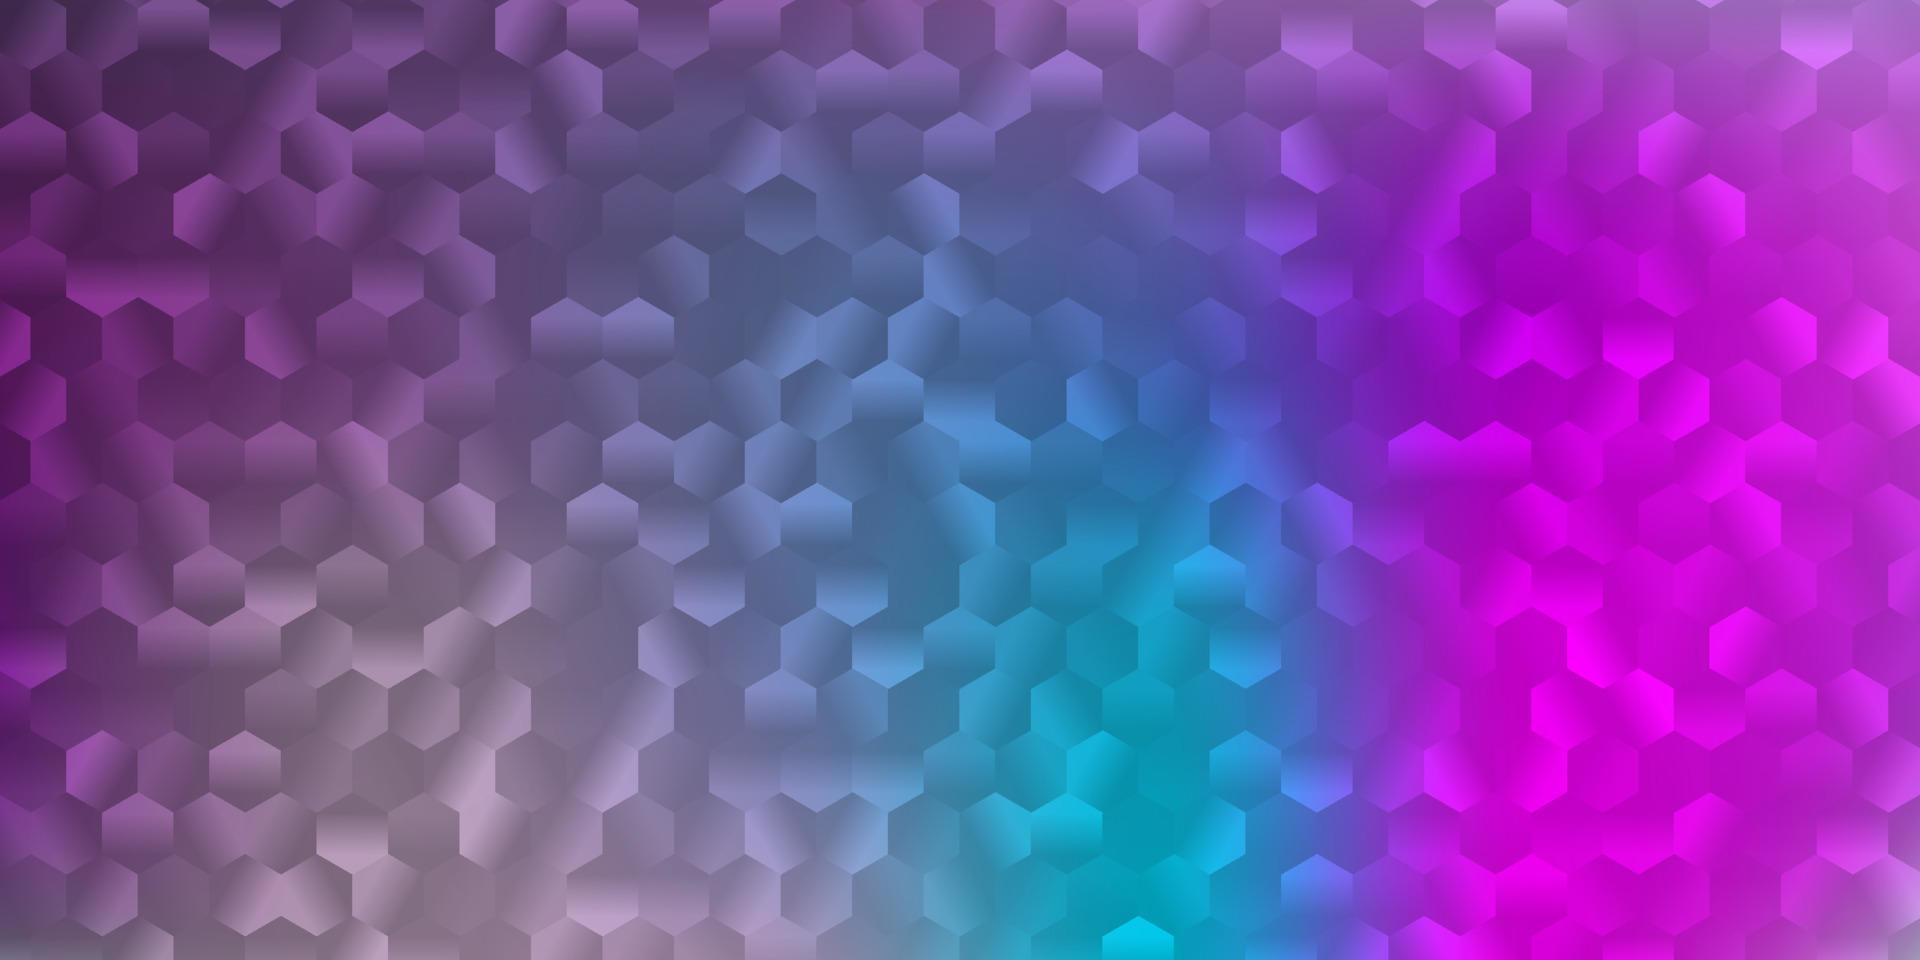 modelo de vetor rosa claro, azul em um estilo hexagonal.